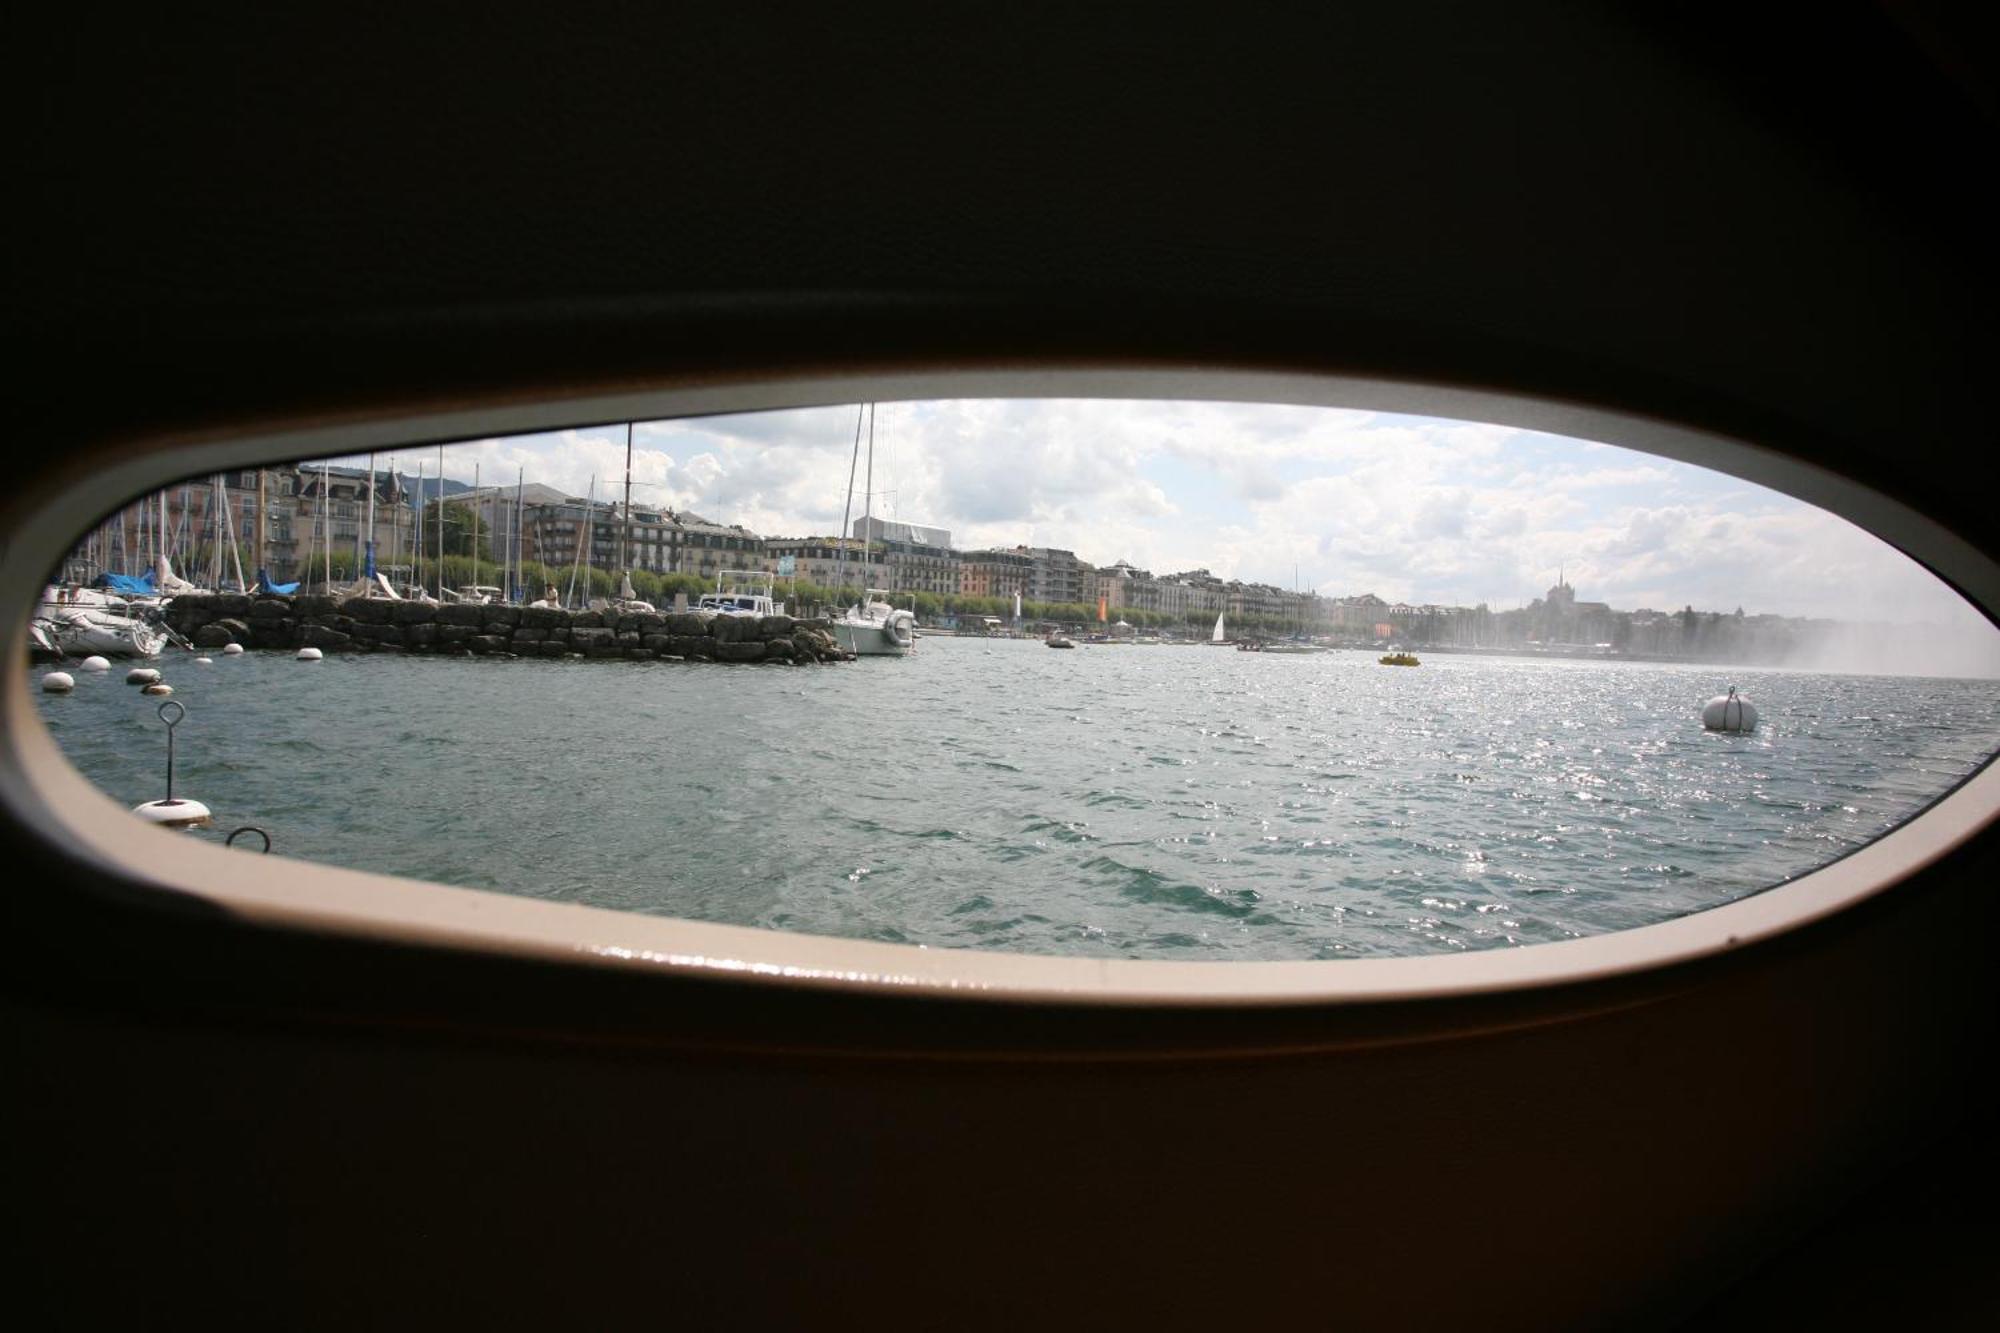 Floatinn Boat-Bnb Genève Buitenkant foto